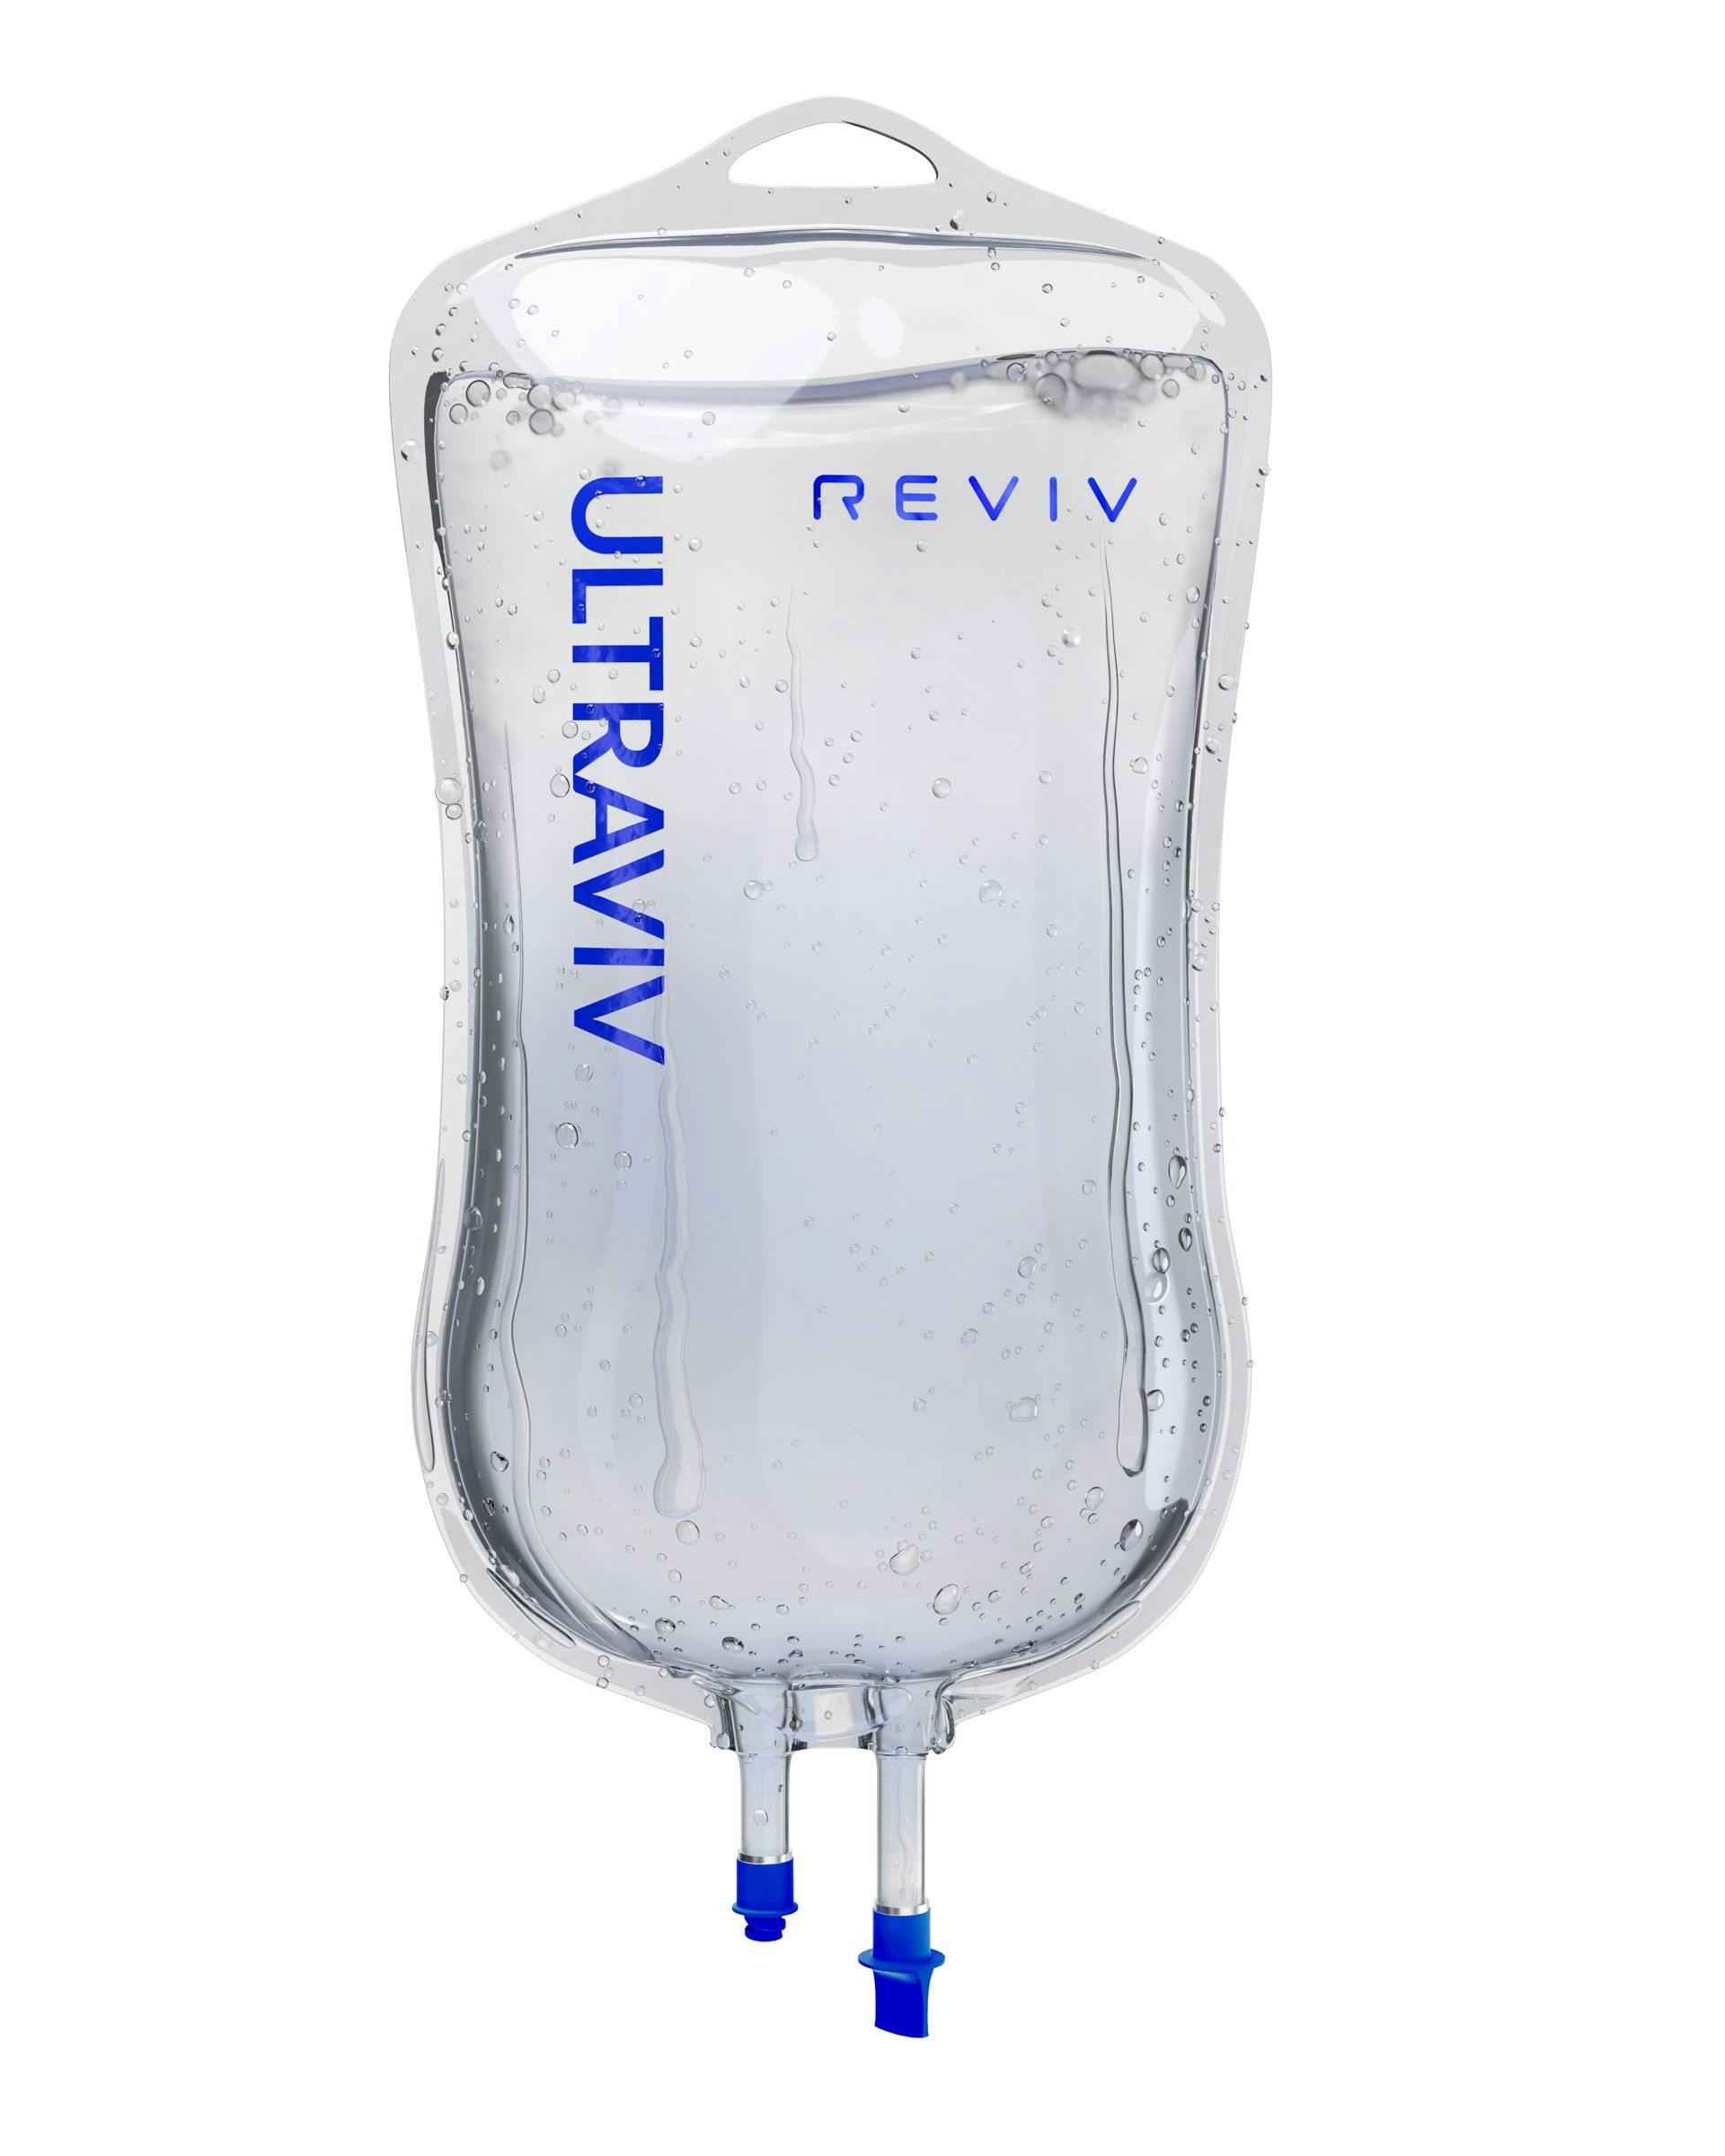 REVIV IV Bag Front Ultraviv